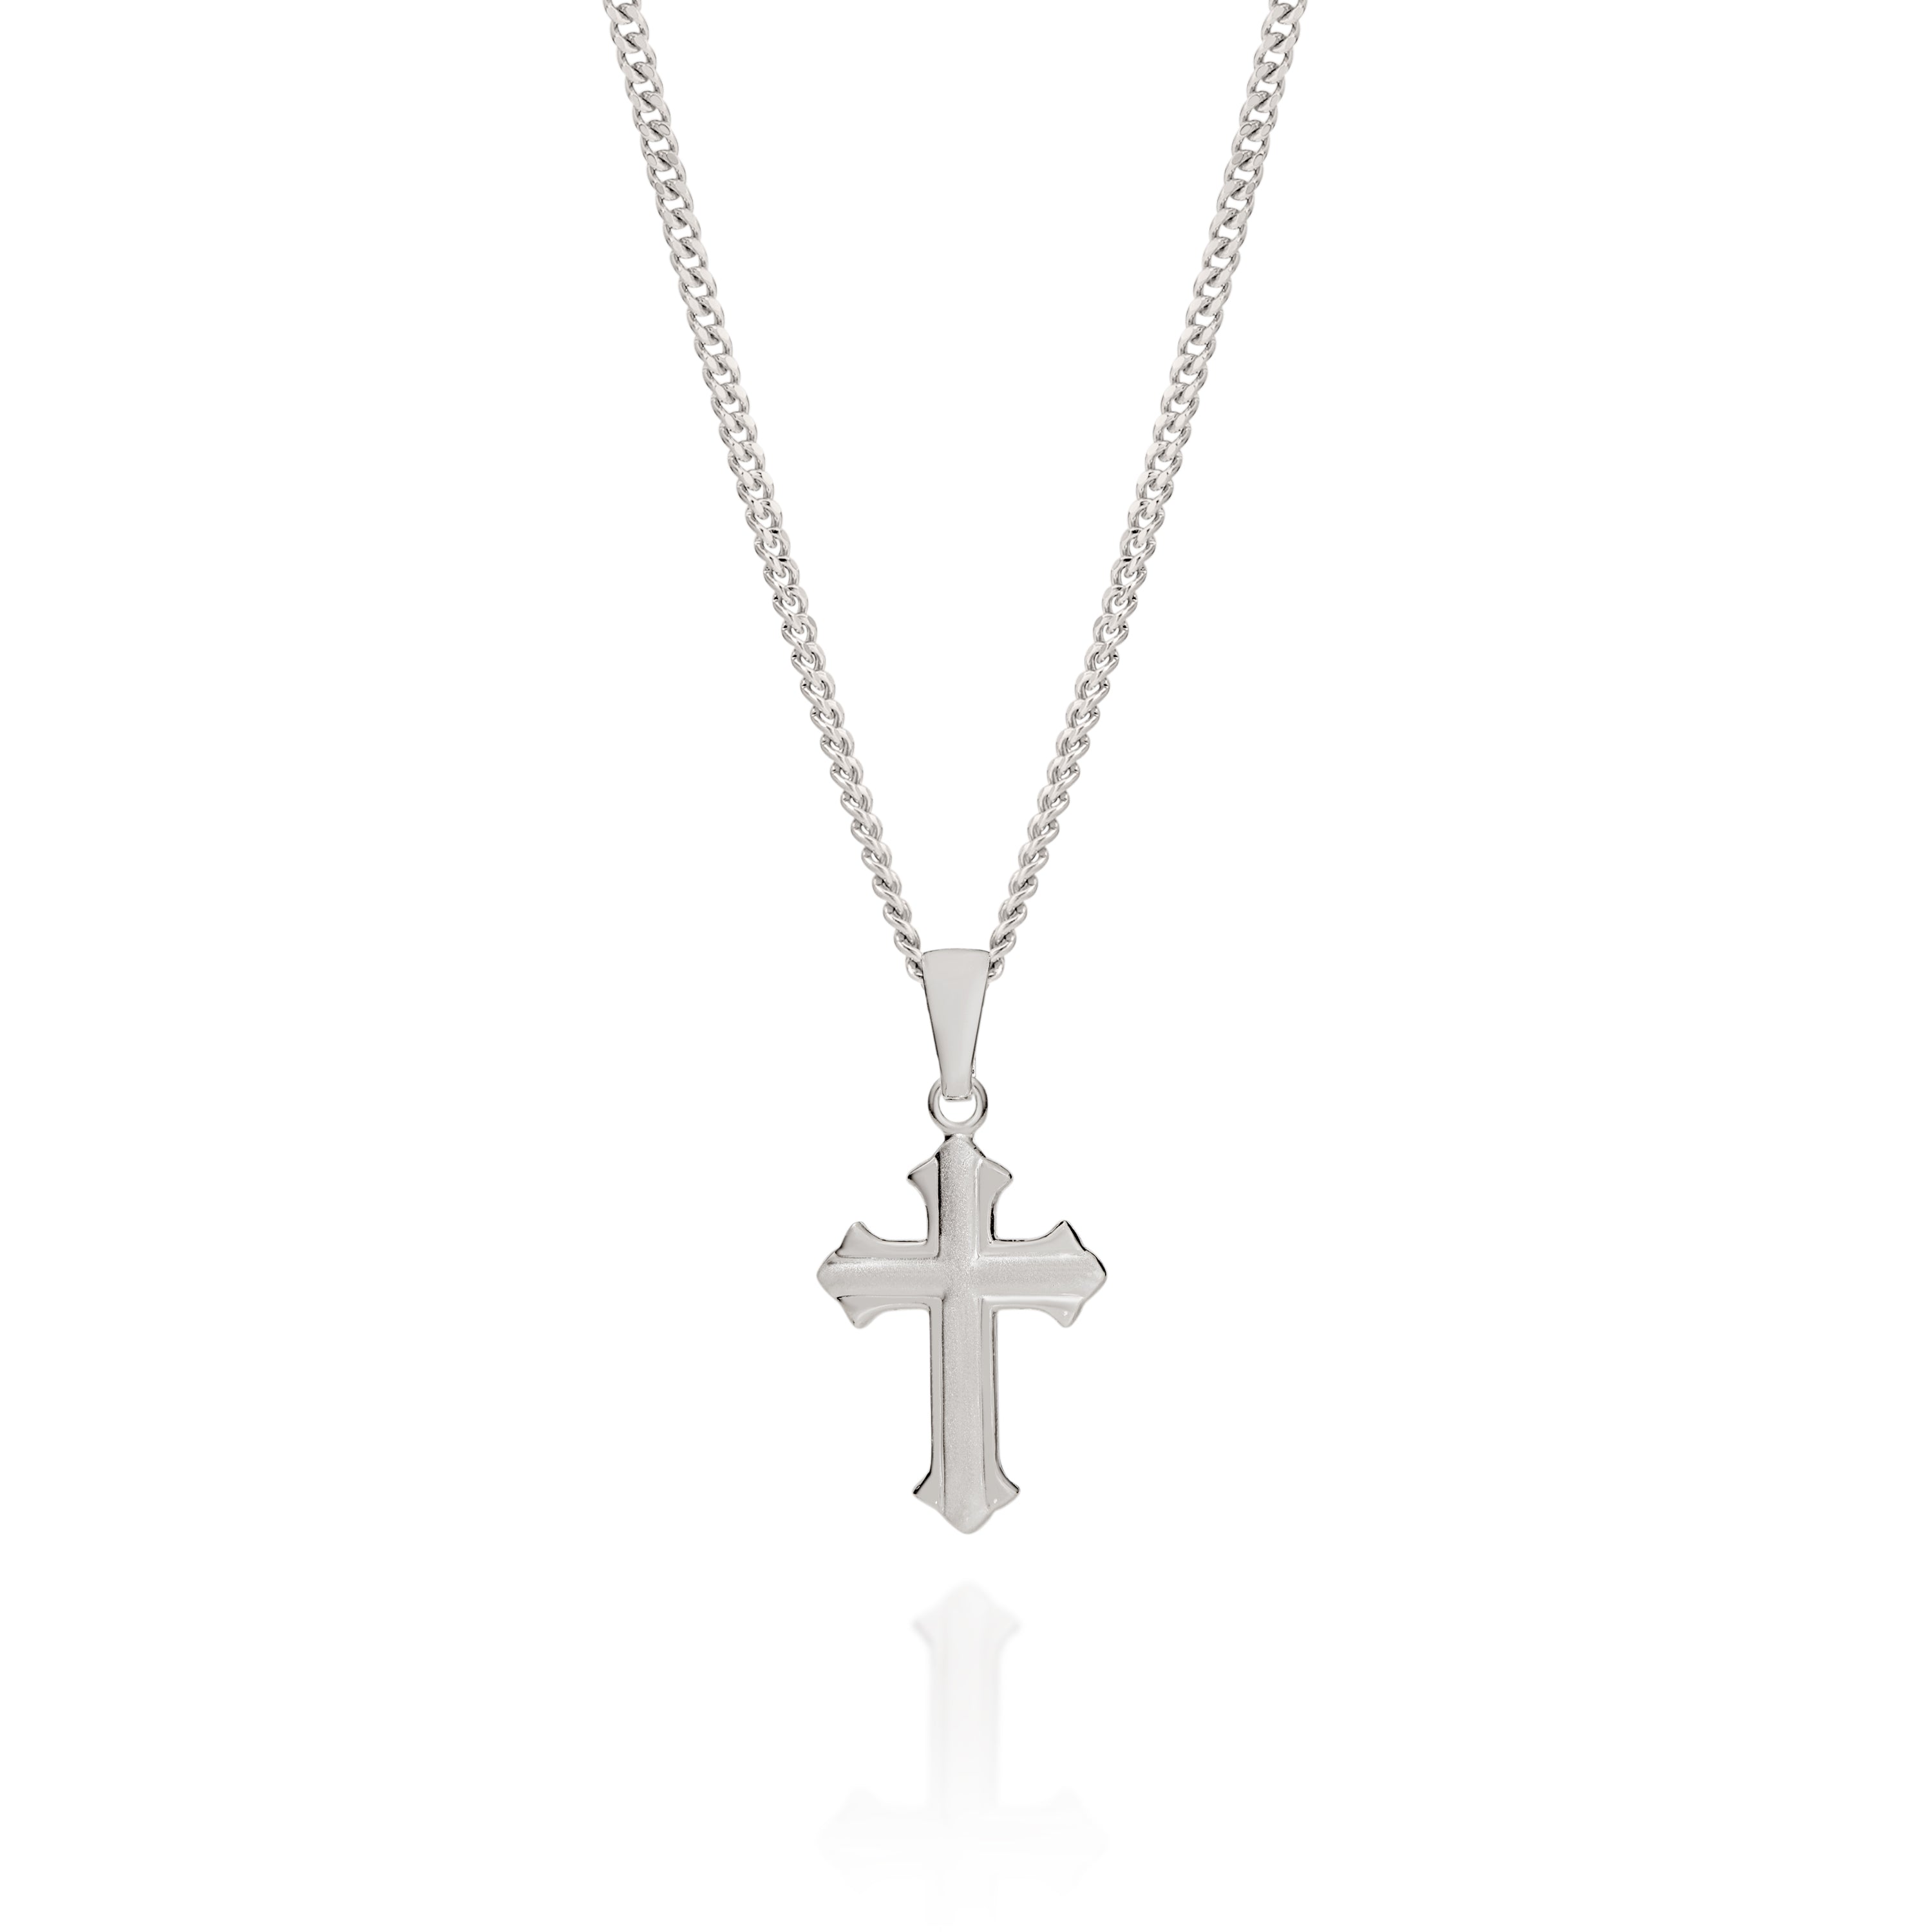 Silver fancy cross pendant